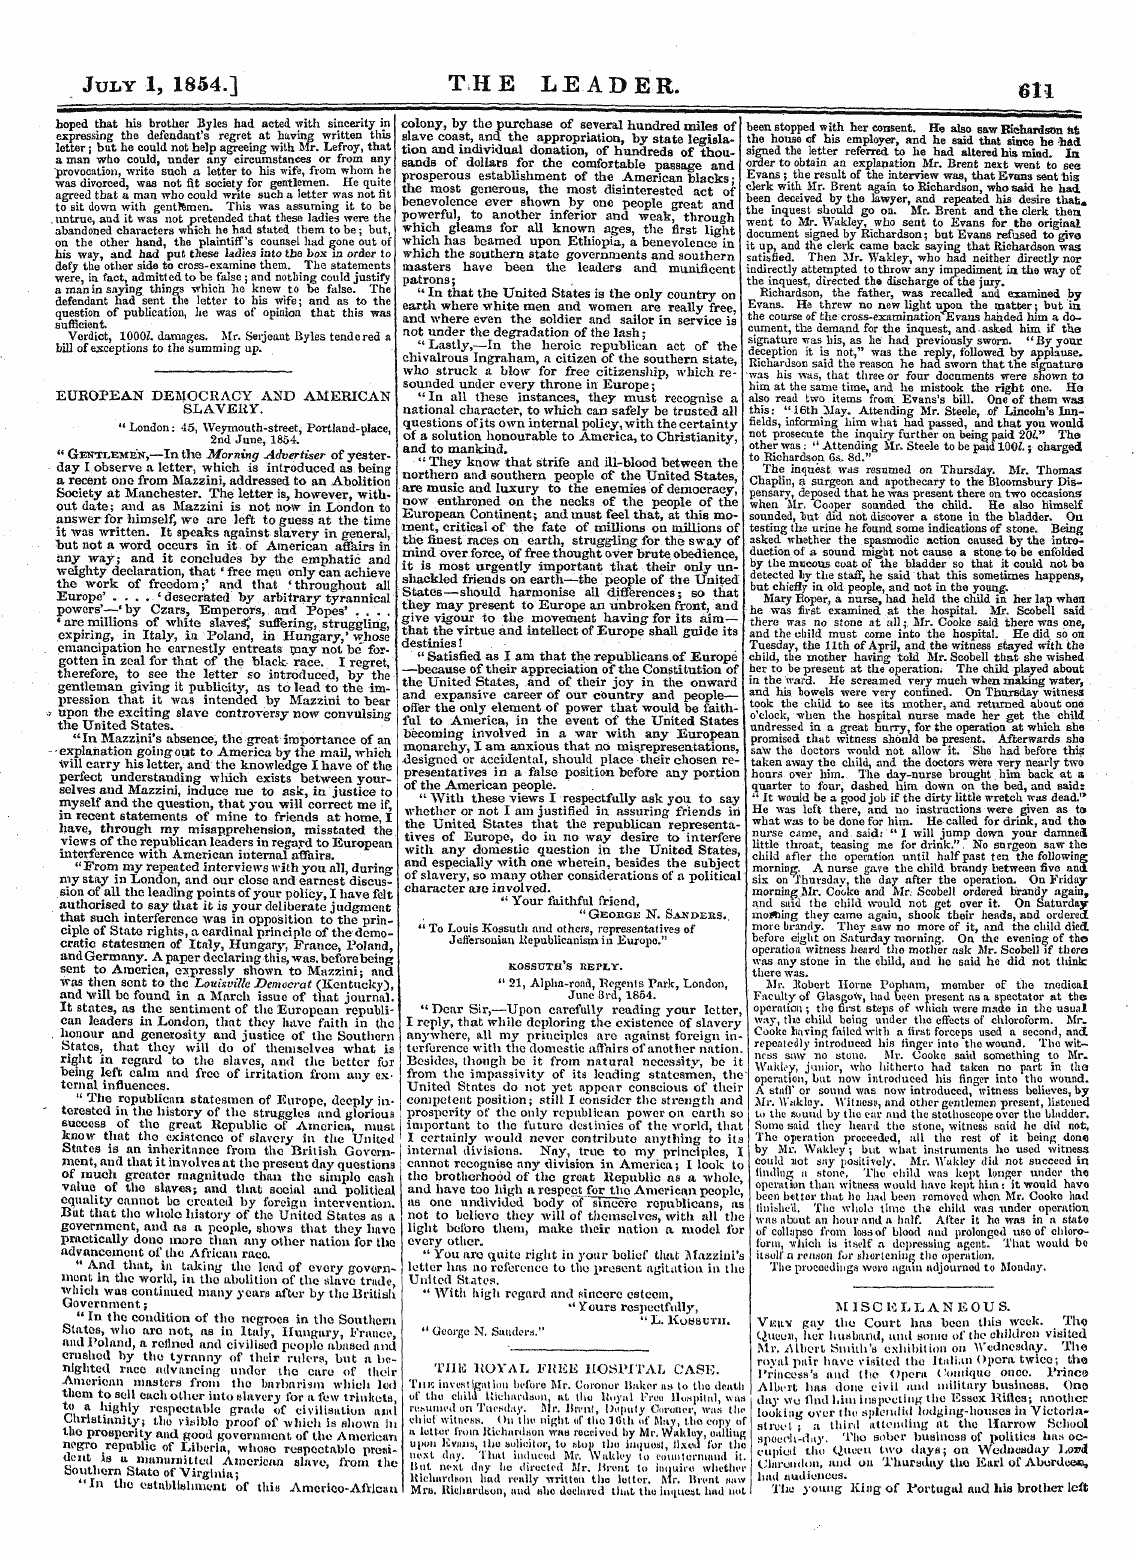 Leader (1850-1860): jS F Y, 2nd edition - July 1, 1854.] T H E Lead Er. 611